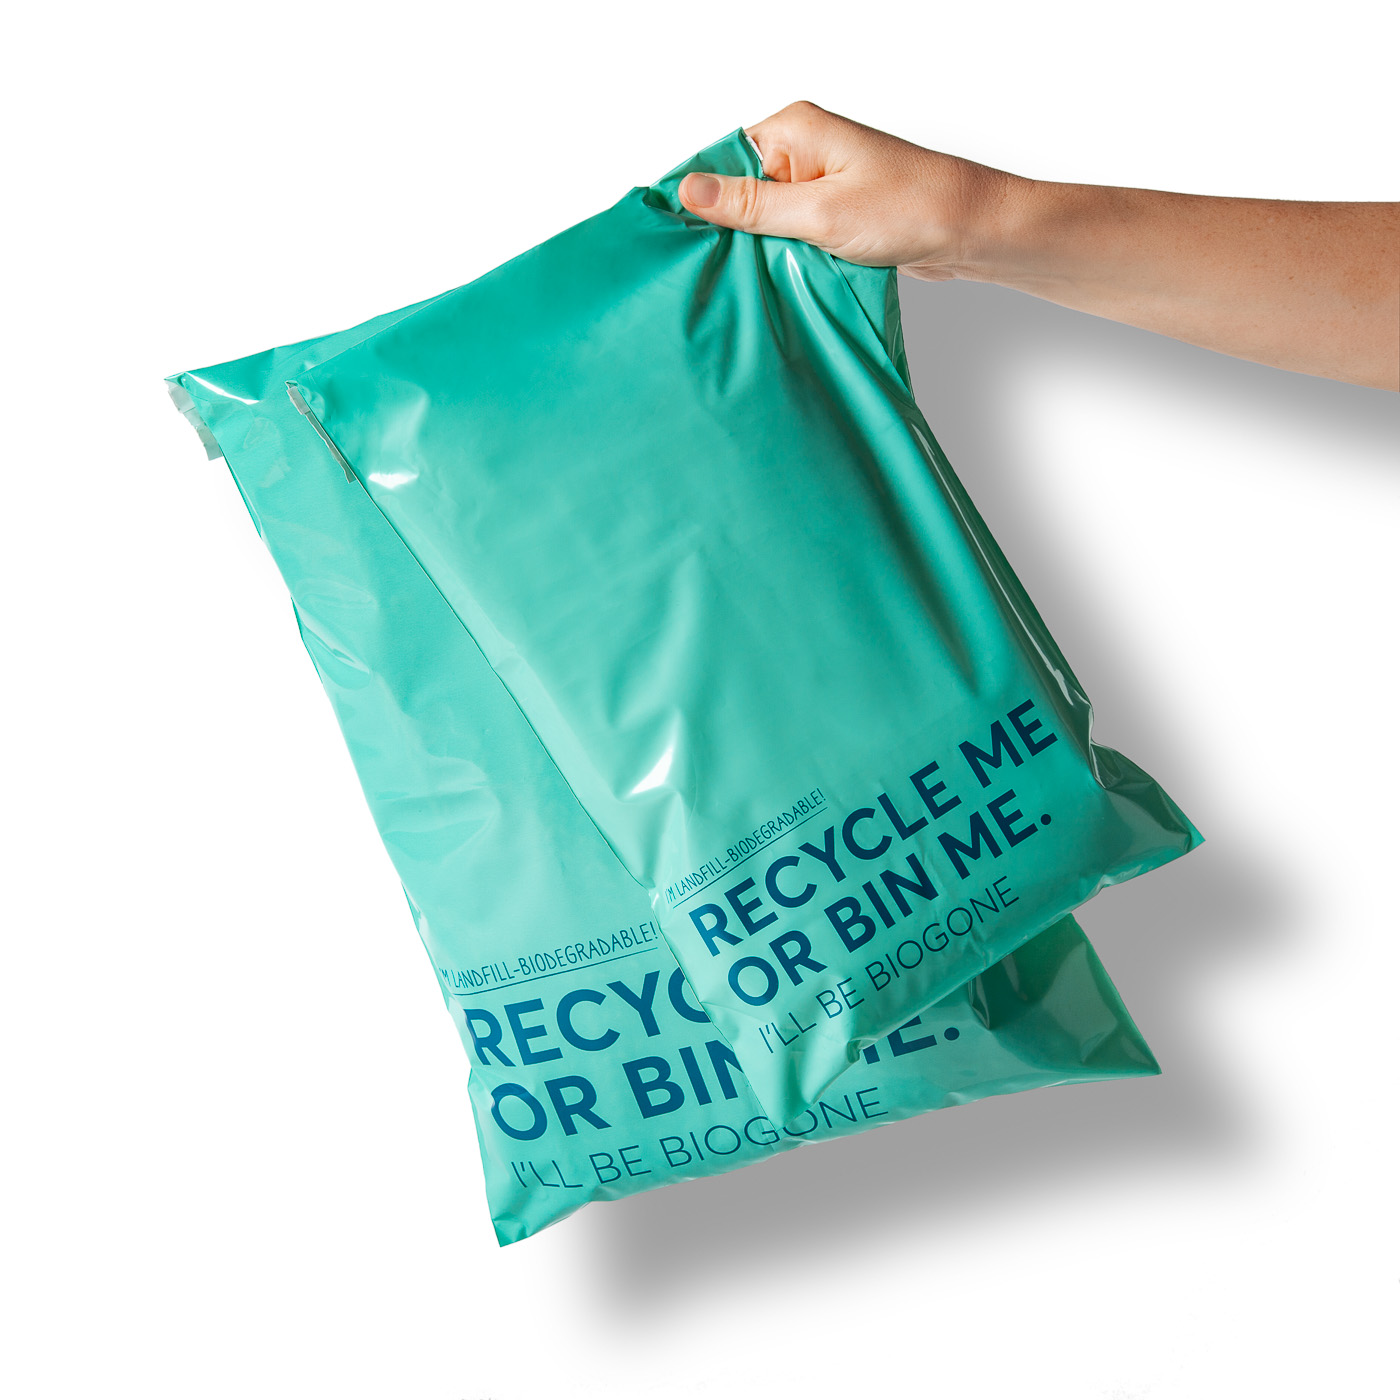 PET N PET Dog Poop Bag 100% Compostable Poop Bags Vegetable-Based Corn  Starch Dog Poop Bags Unscented Poop Bags Refill Rolls - Walmart.com